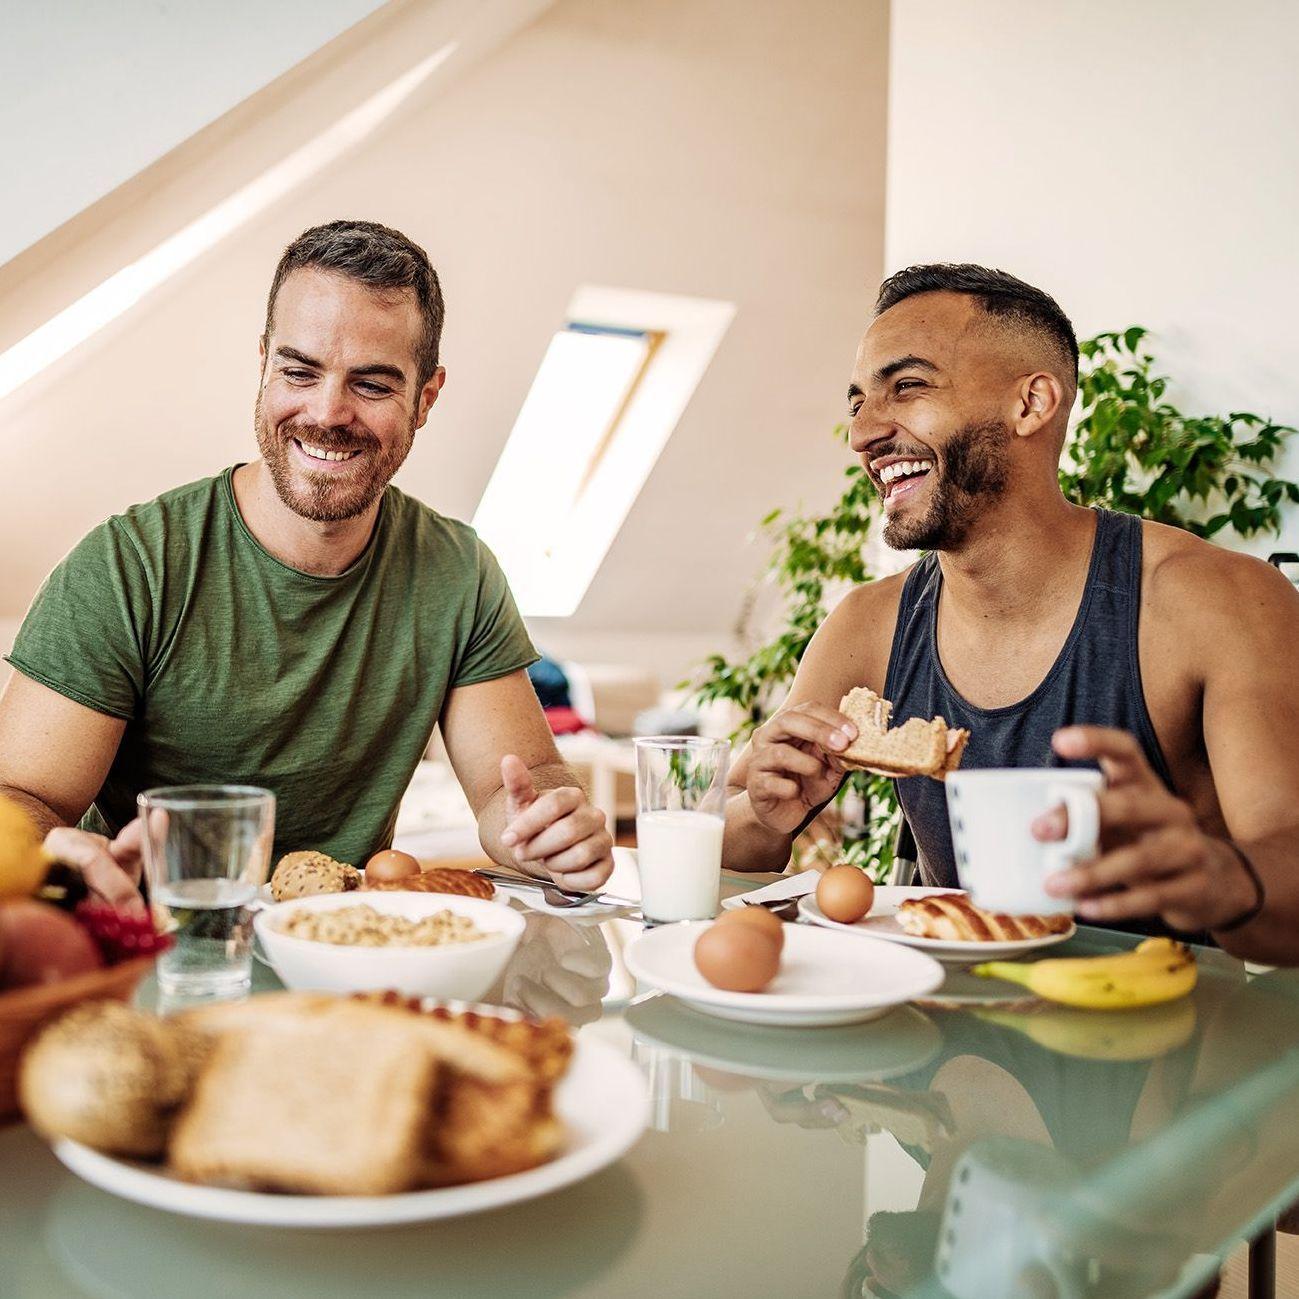 Zwei Männer frühstücken ausgelassen miteinander. Sie sitzen der Kamera zugewandt und vor ihnen ist ein gedeckter Tisch mit gesunden Nahrungsmitteln. Im Hintergrund sieht man die Schrägen einer Dachgeschosswohnung.